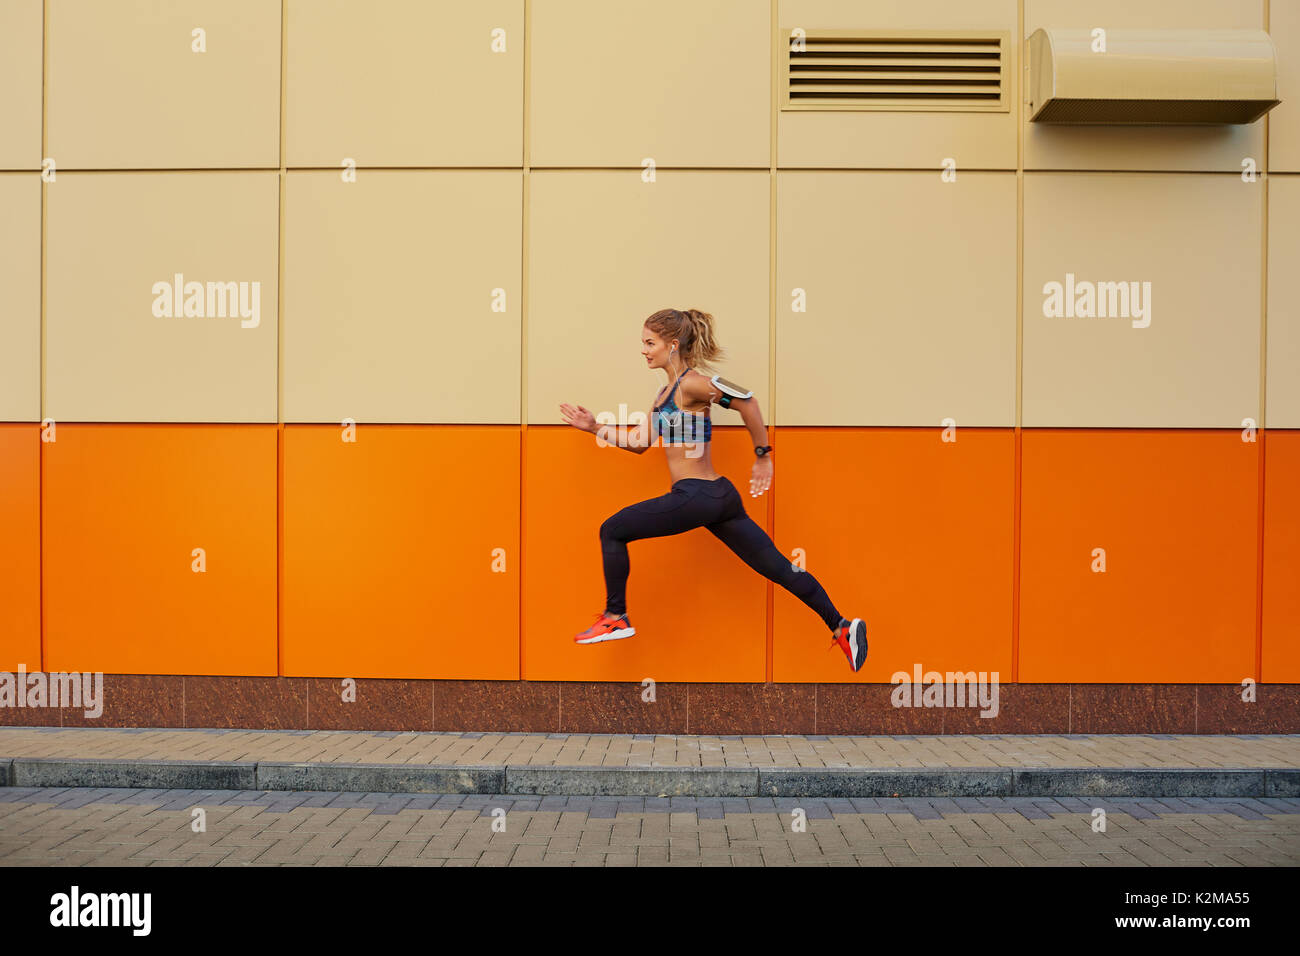 La ragazza sportiva ha saltato su uno sfondo arancione. Foto Stock